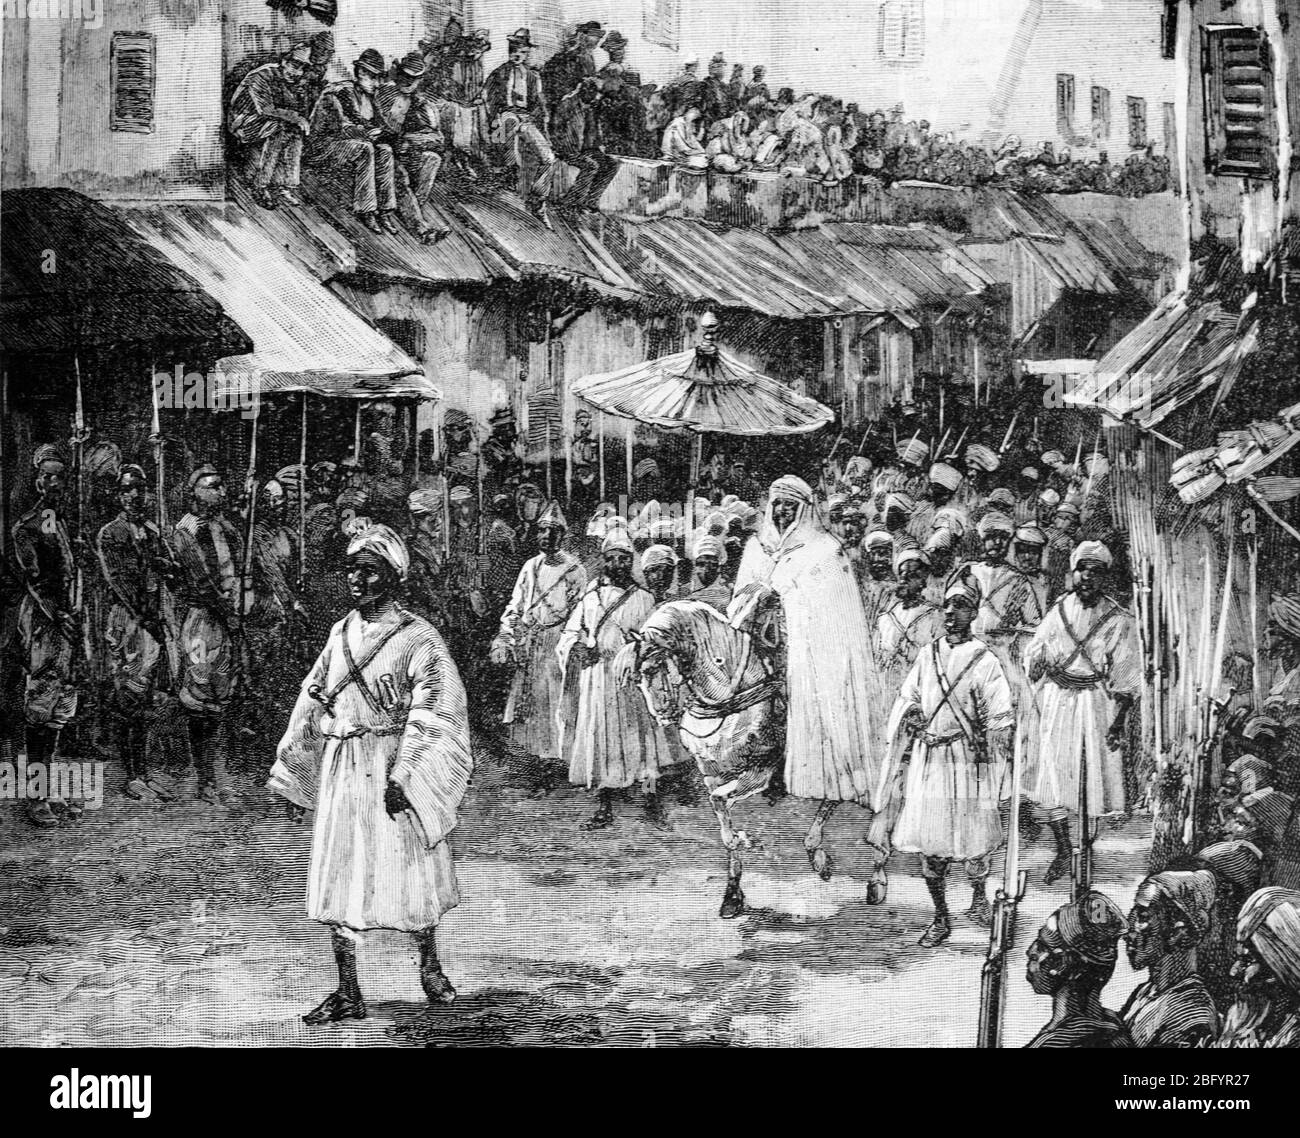 Alaouite Sultan Hassan I. von Marokko (1836-1894, regierte 1873-1894) reiste in Prozession durch die Straßen von Tanger Marokko. Vintage oder Alte Illustration oder Gravur 1889 Stockfoto